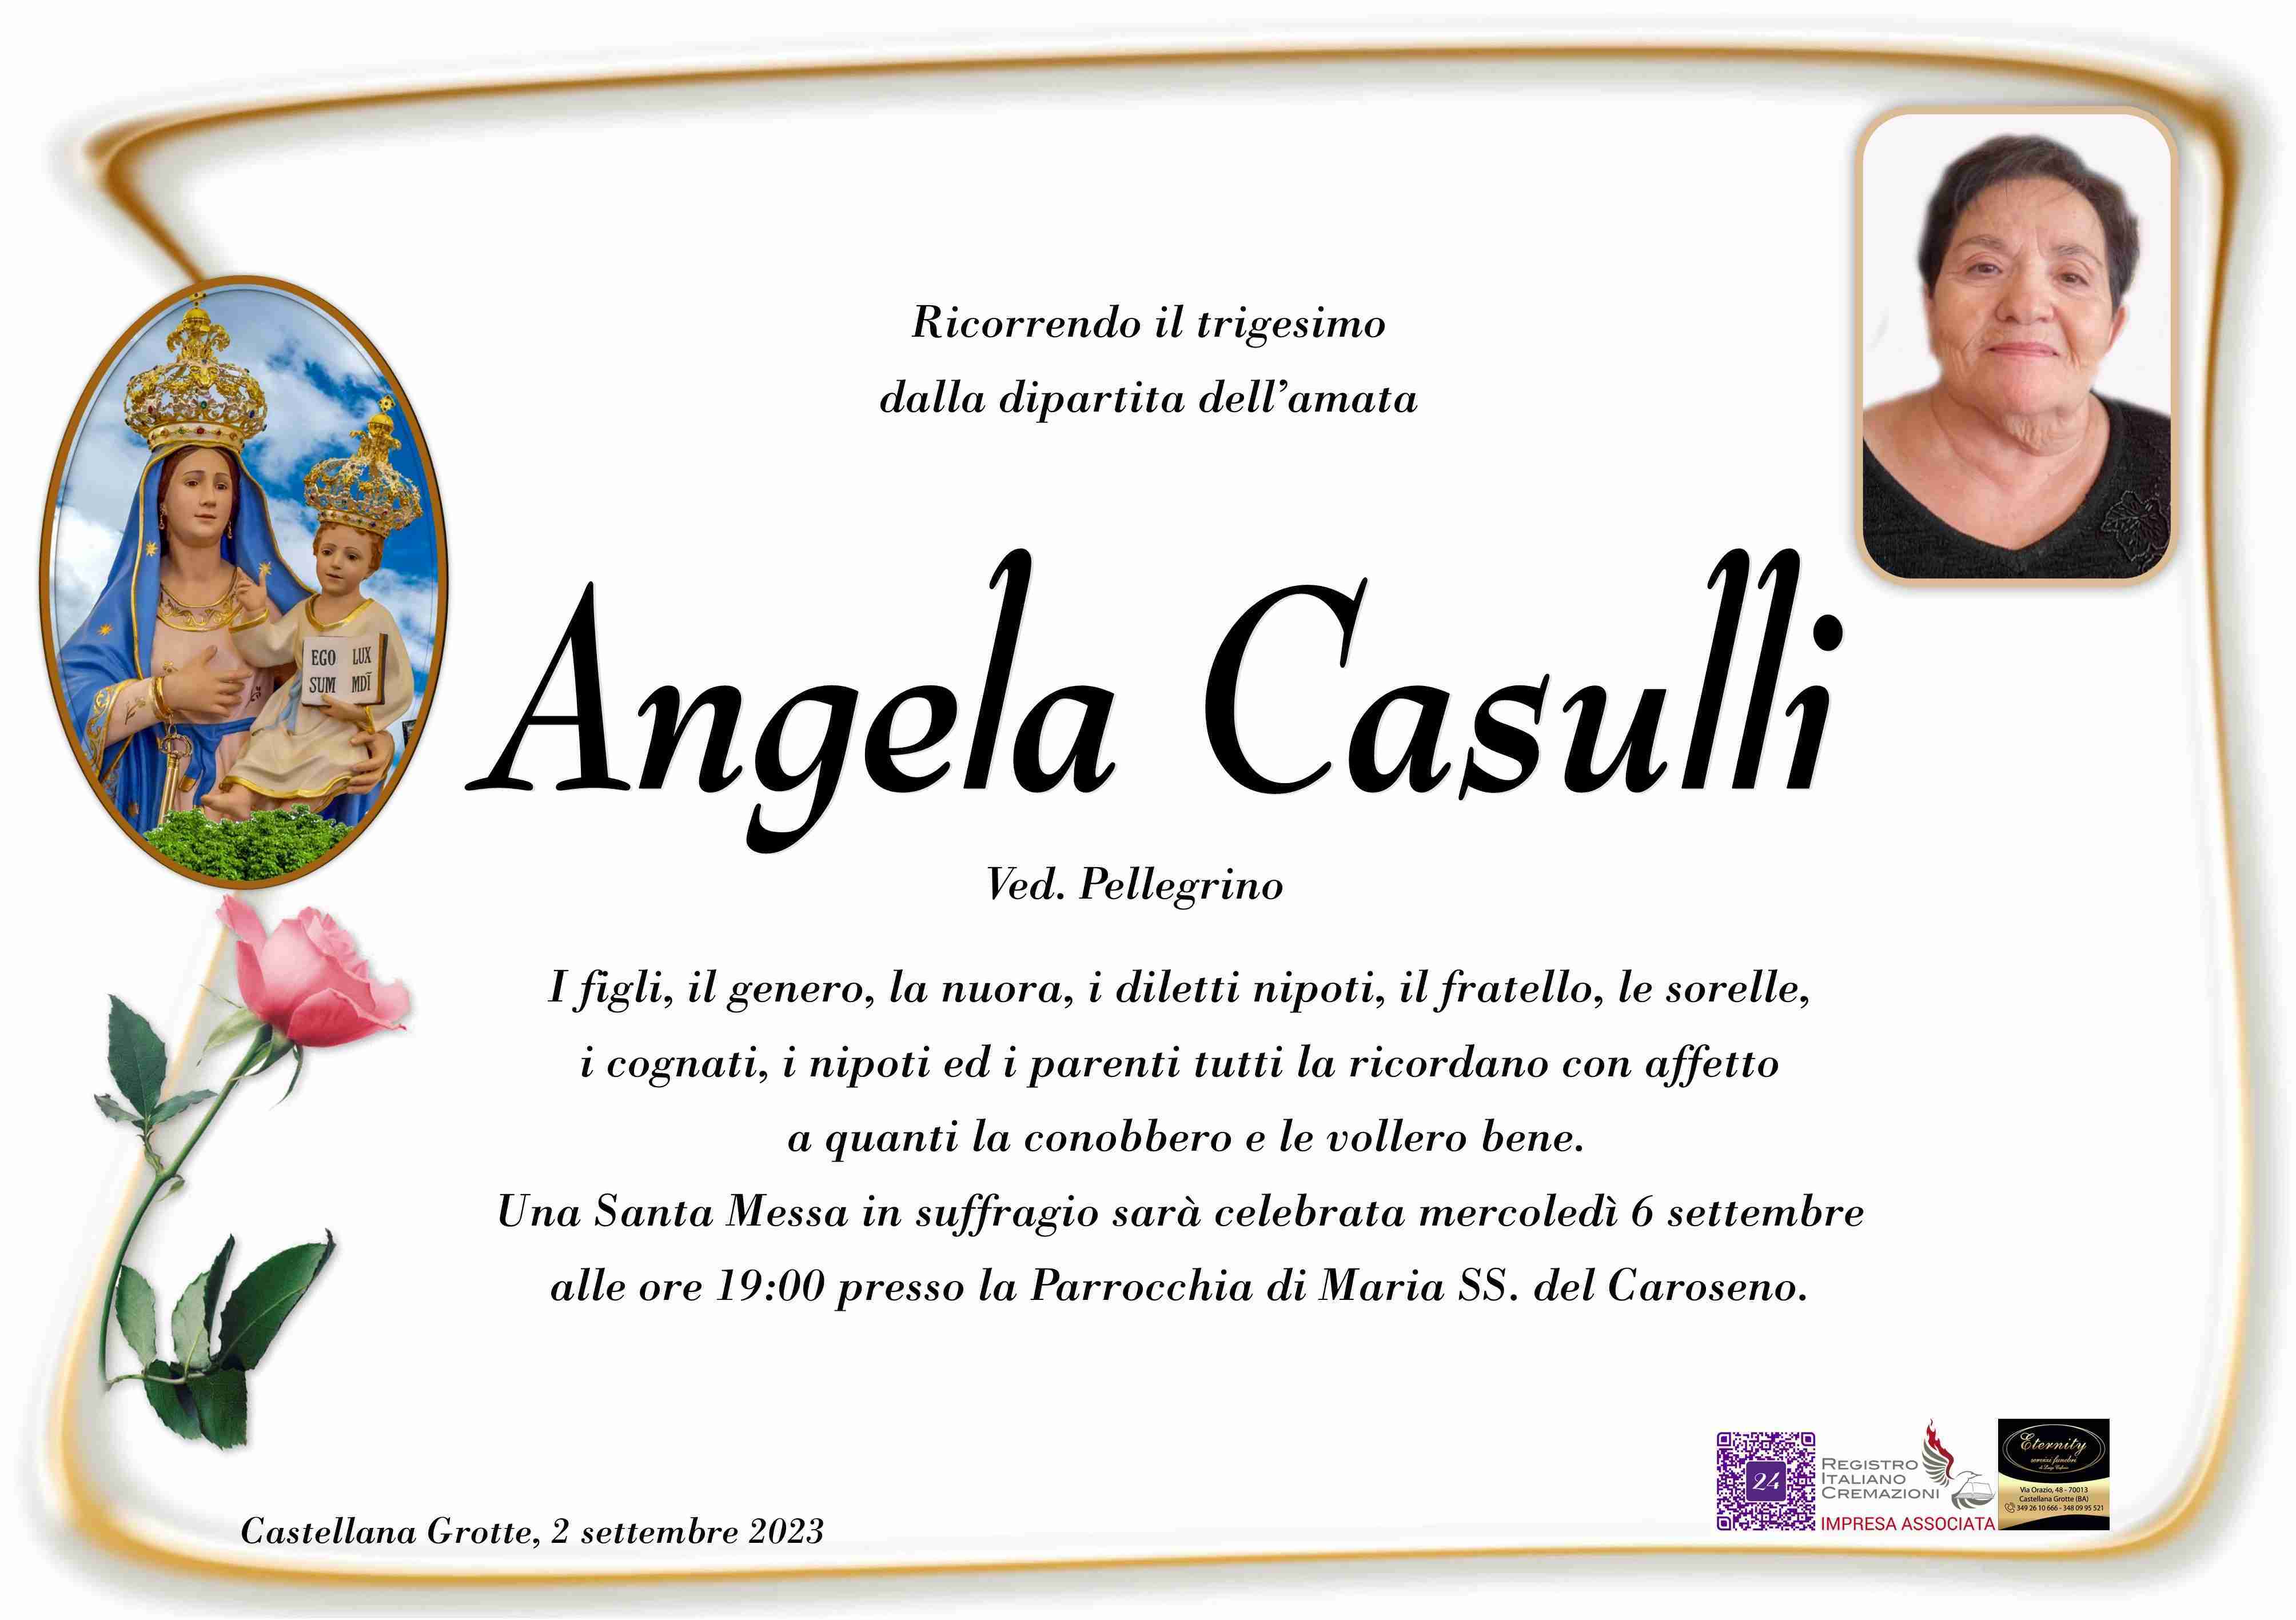 Angela Casulli